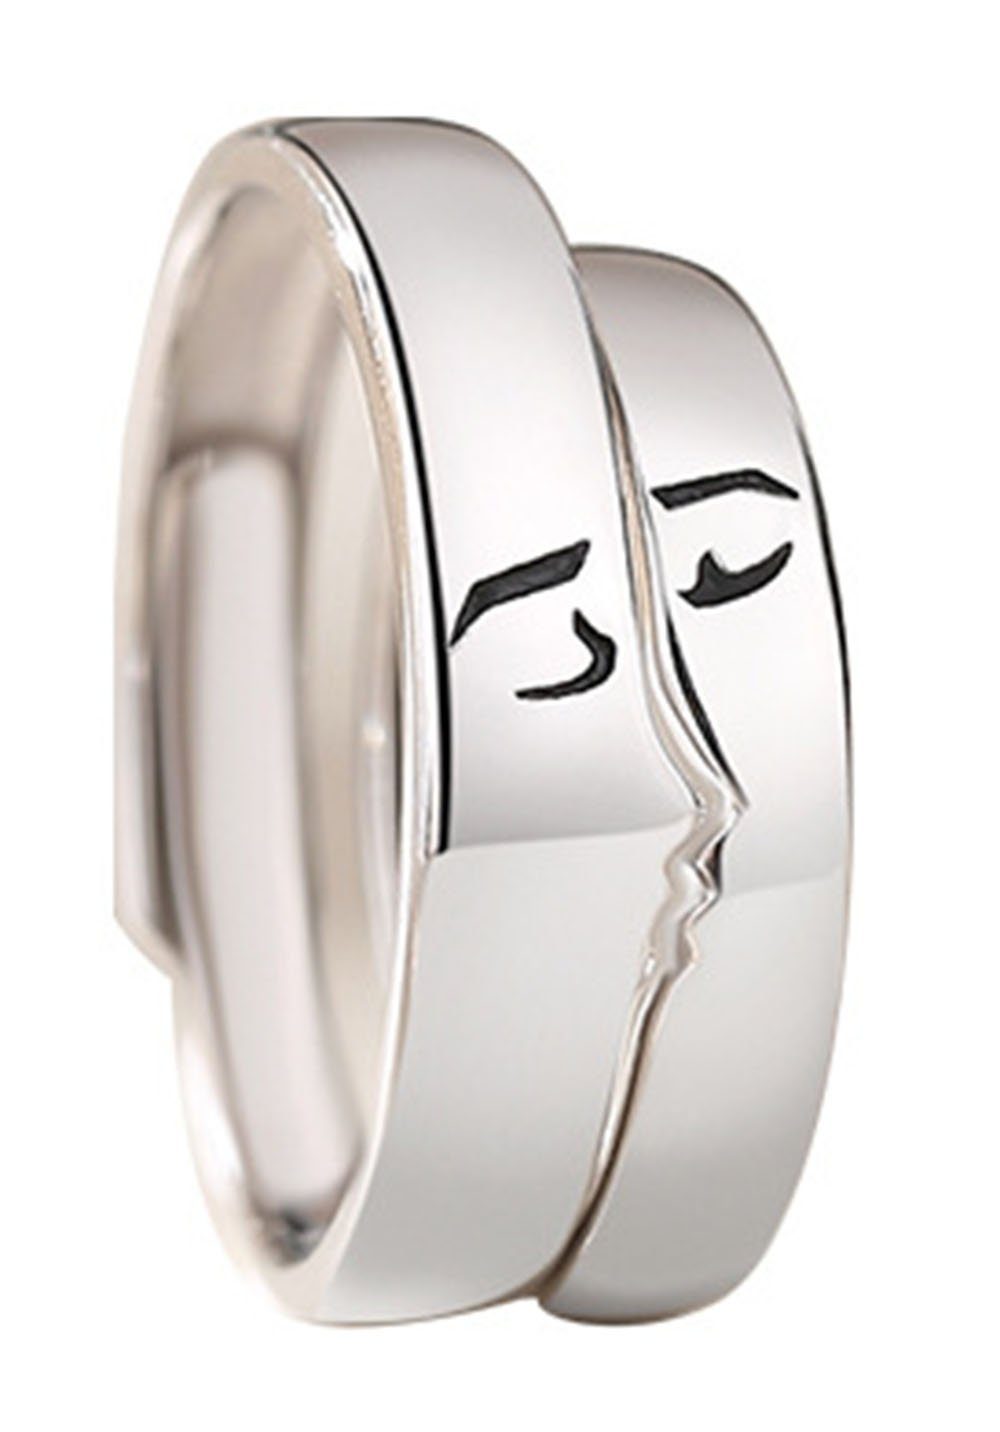 Haiaveng Fingerring s925 Silber Ringe, Paar Ringe Männer und Frauen,2 Stück, Patchwork-Ring, verstellbarer Ringe